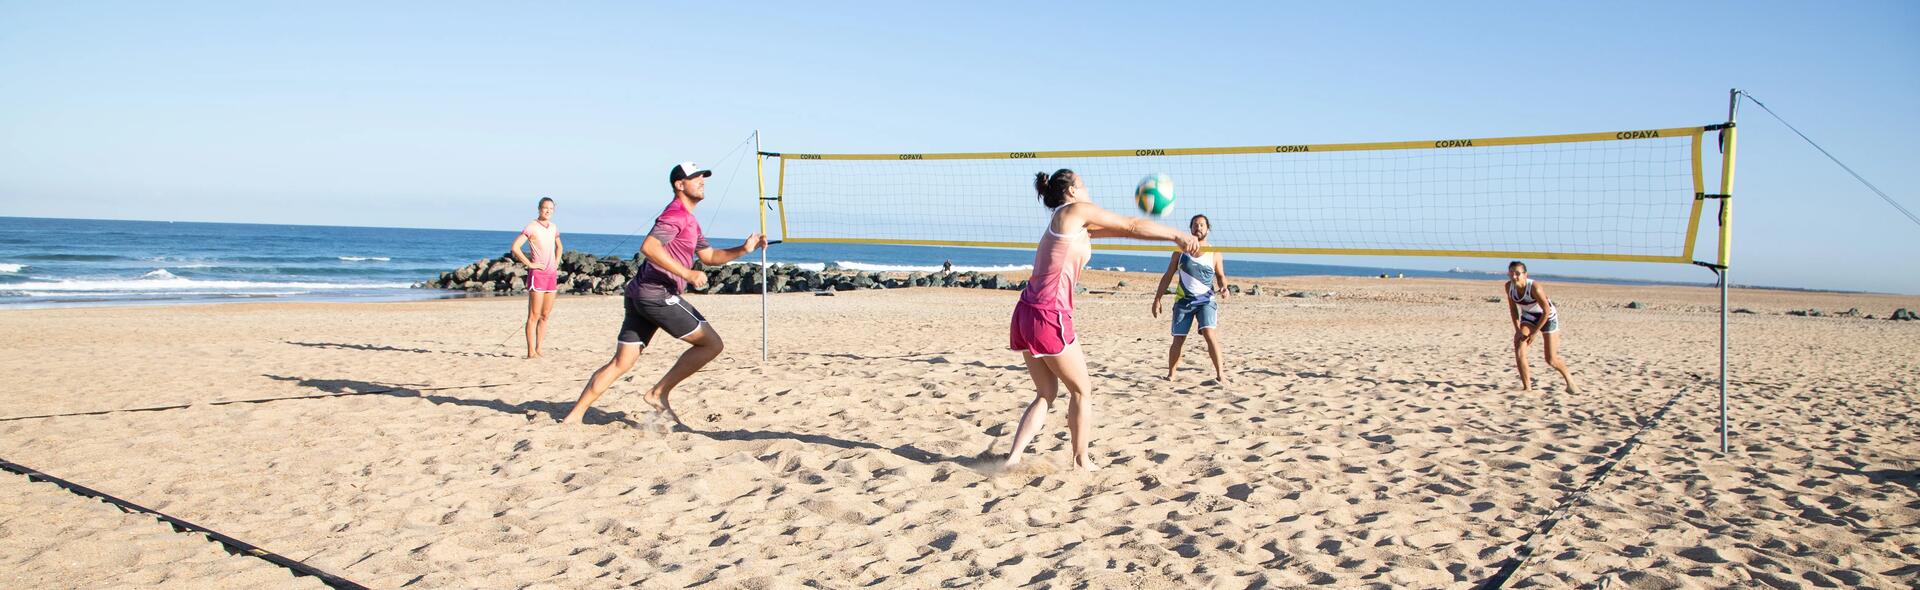 Grupa znajomych w strojach sportowych gra w siatkówkę plażową 